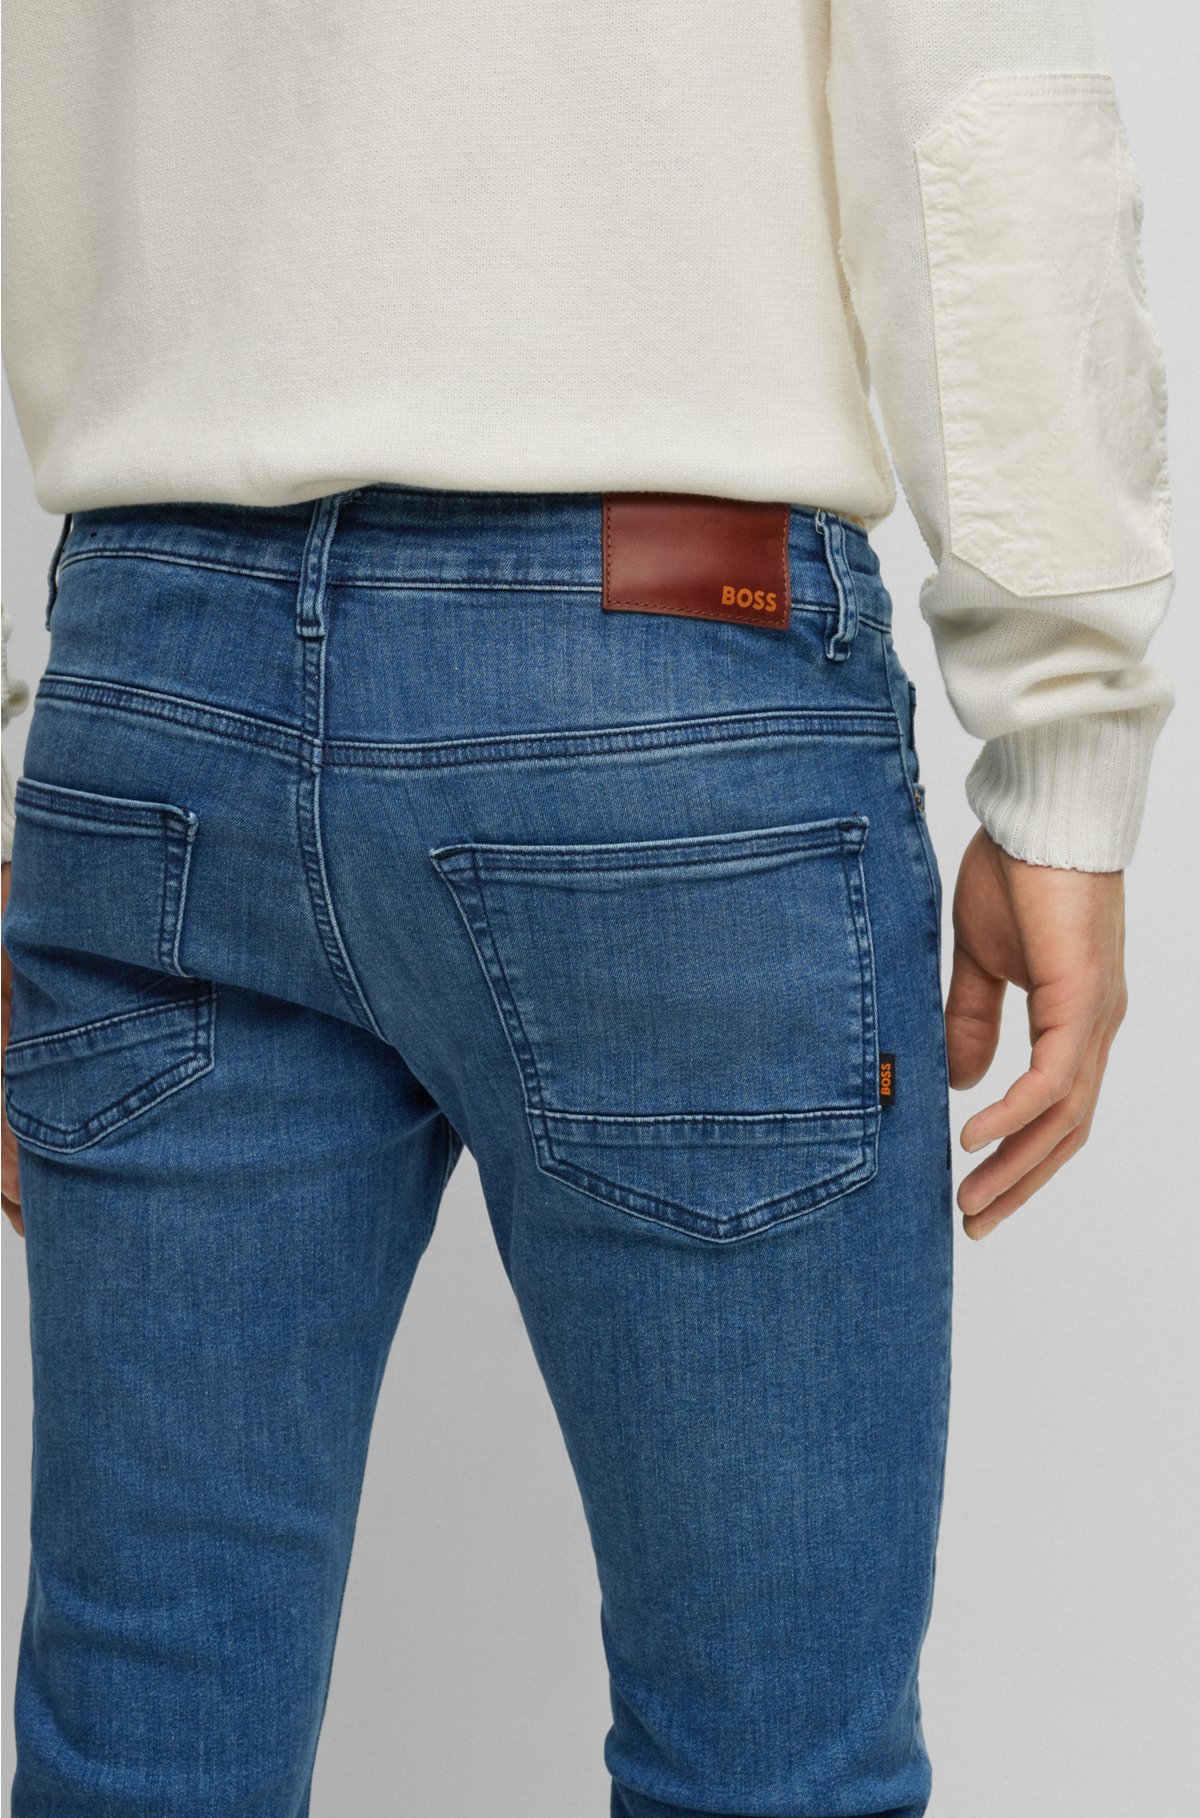 BOSS - Slim-fit jeans denim in super-stretch blue